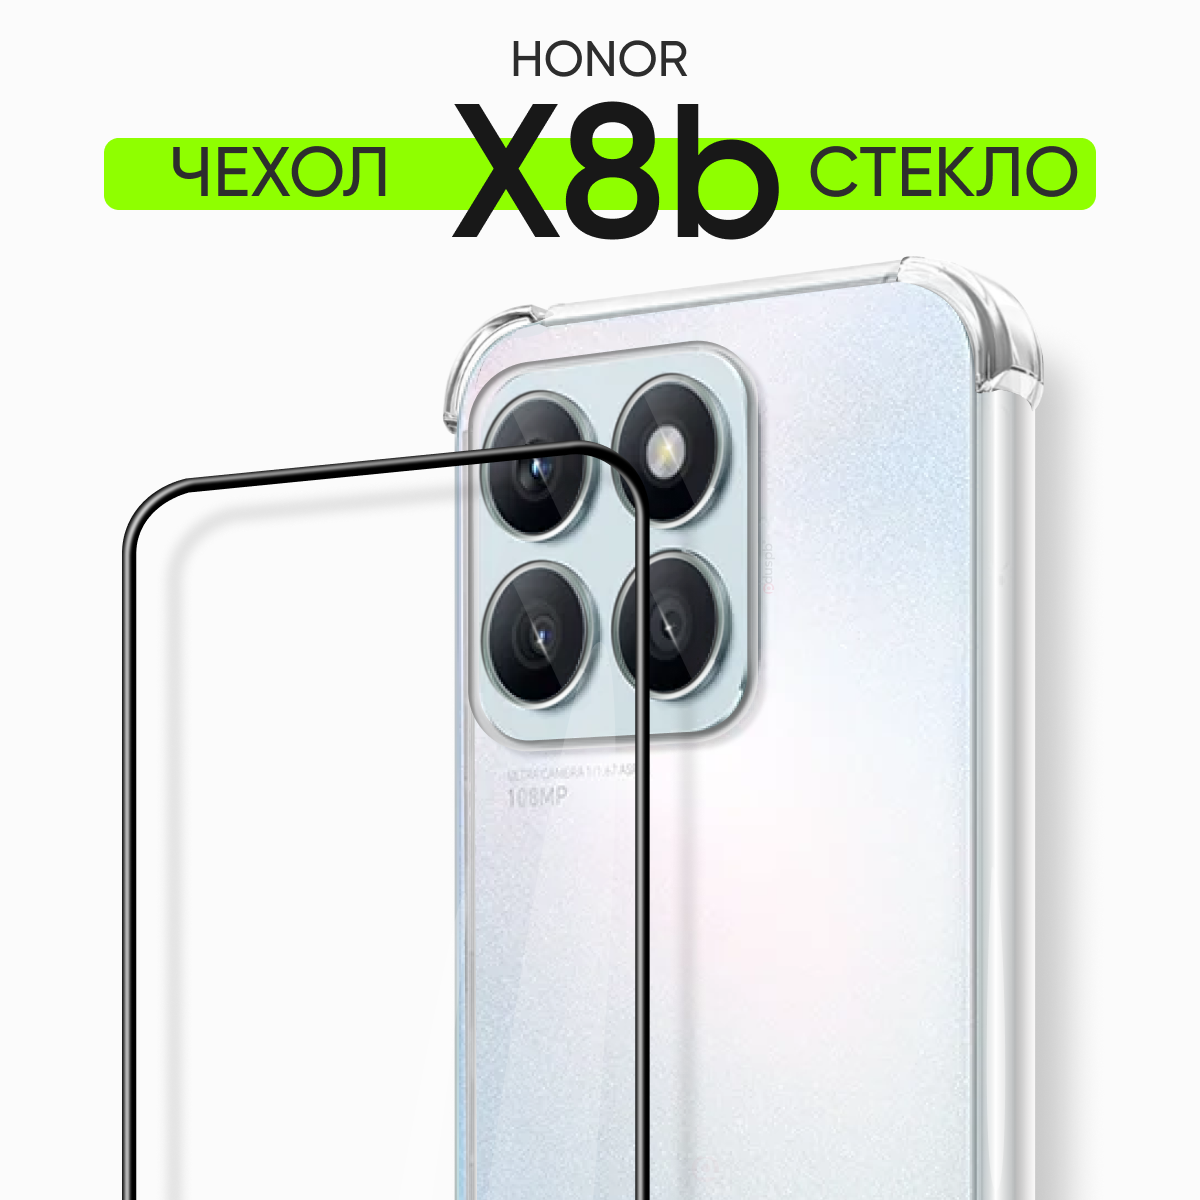 Комплект 2 в 1: Чехол №03 + стекло для Honor x8b / противоударный силиконовый прозрачный клип-кейс с защитой камеры и углов на Хонор Икс 8б